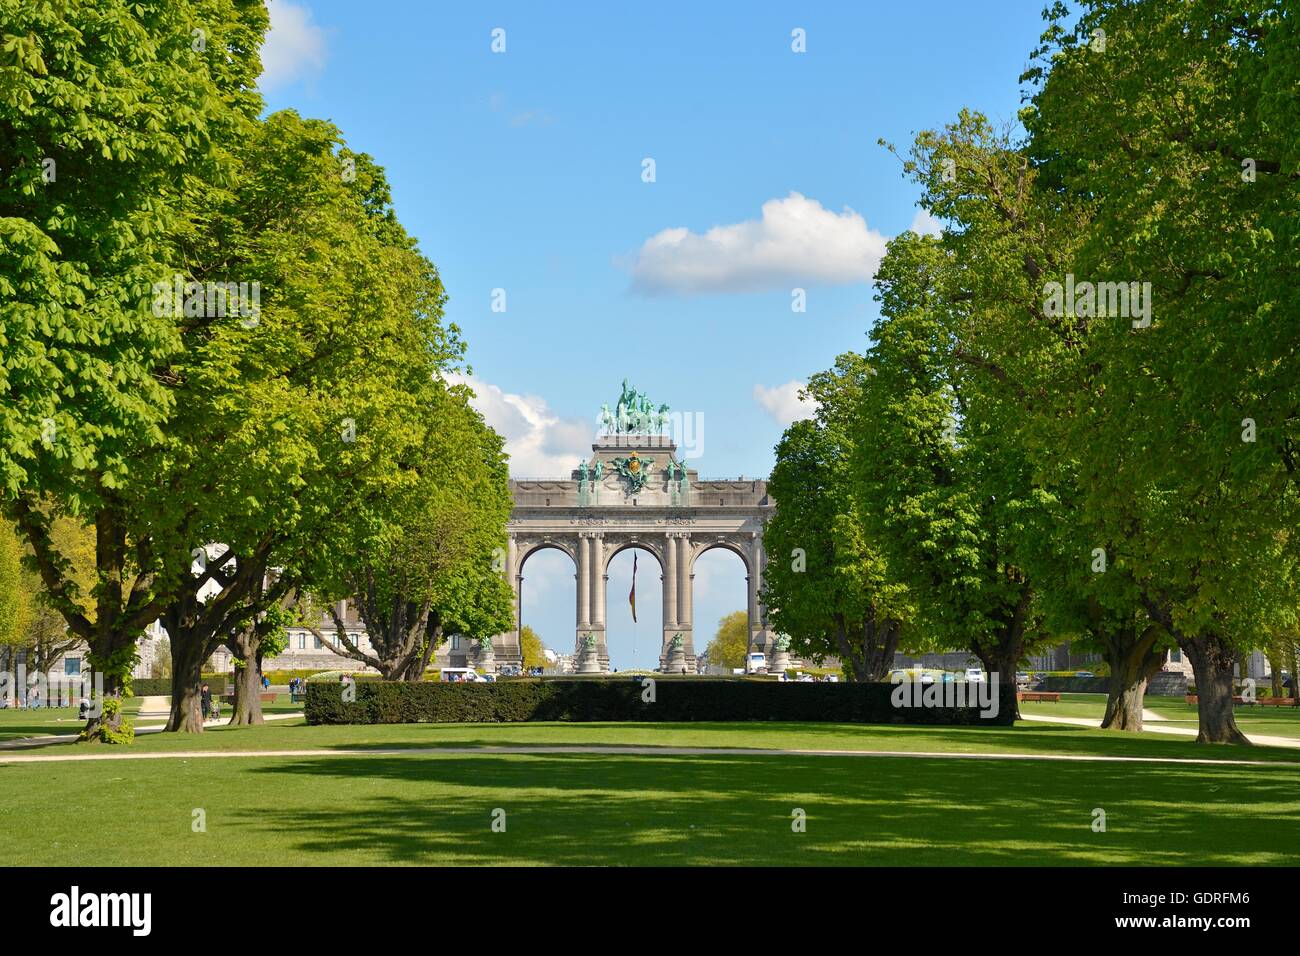 Arch, Jubilee Park, Parc du Cinquantenaire, Brussels, Belgium Stock Photo